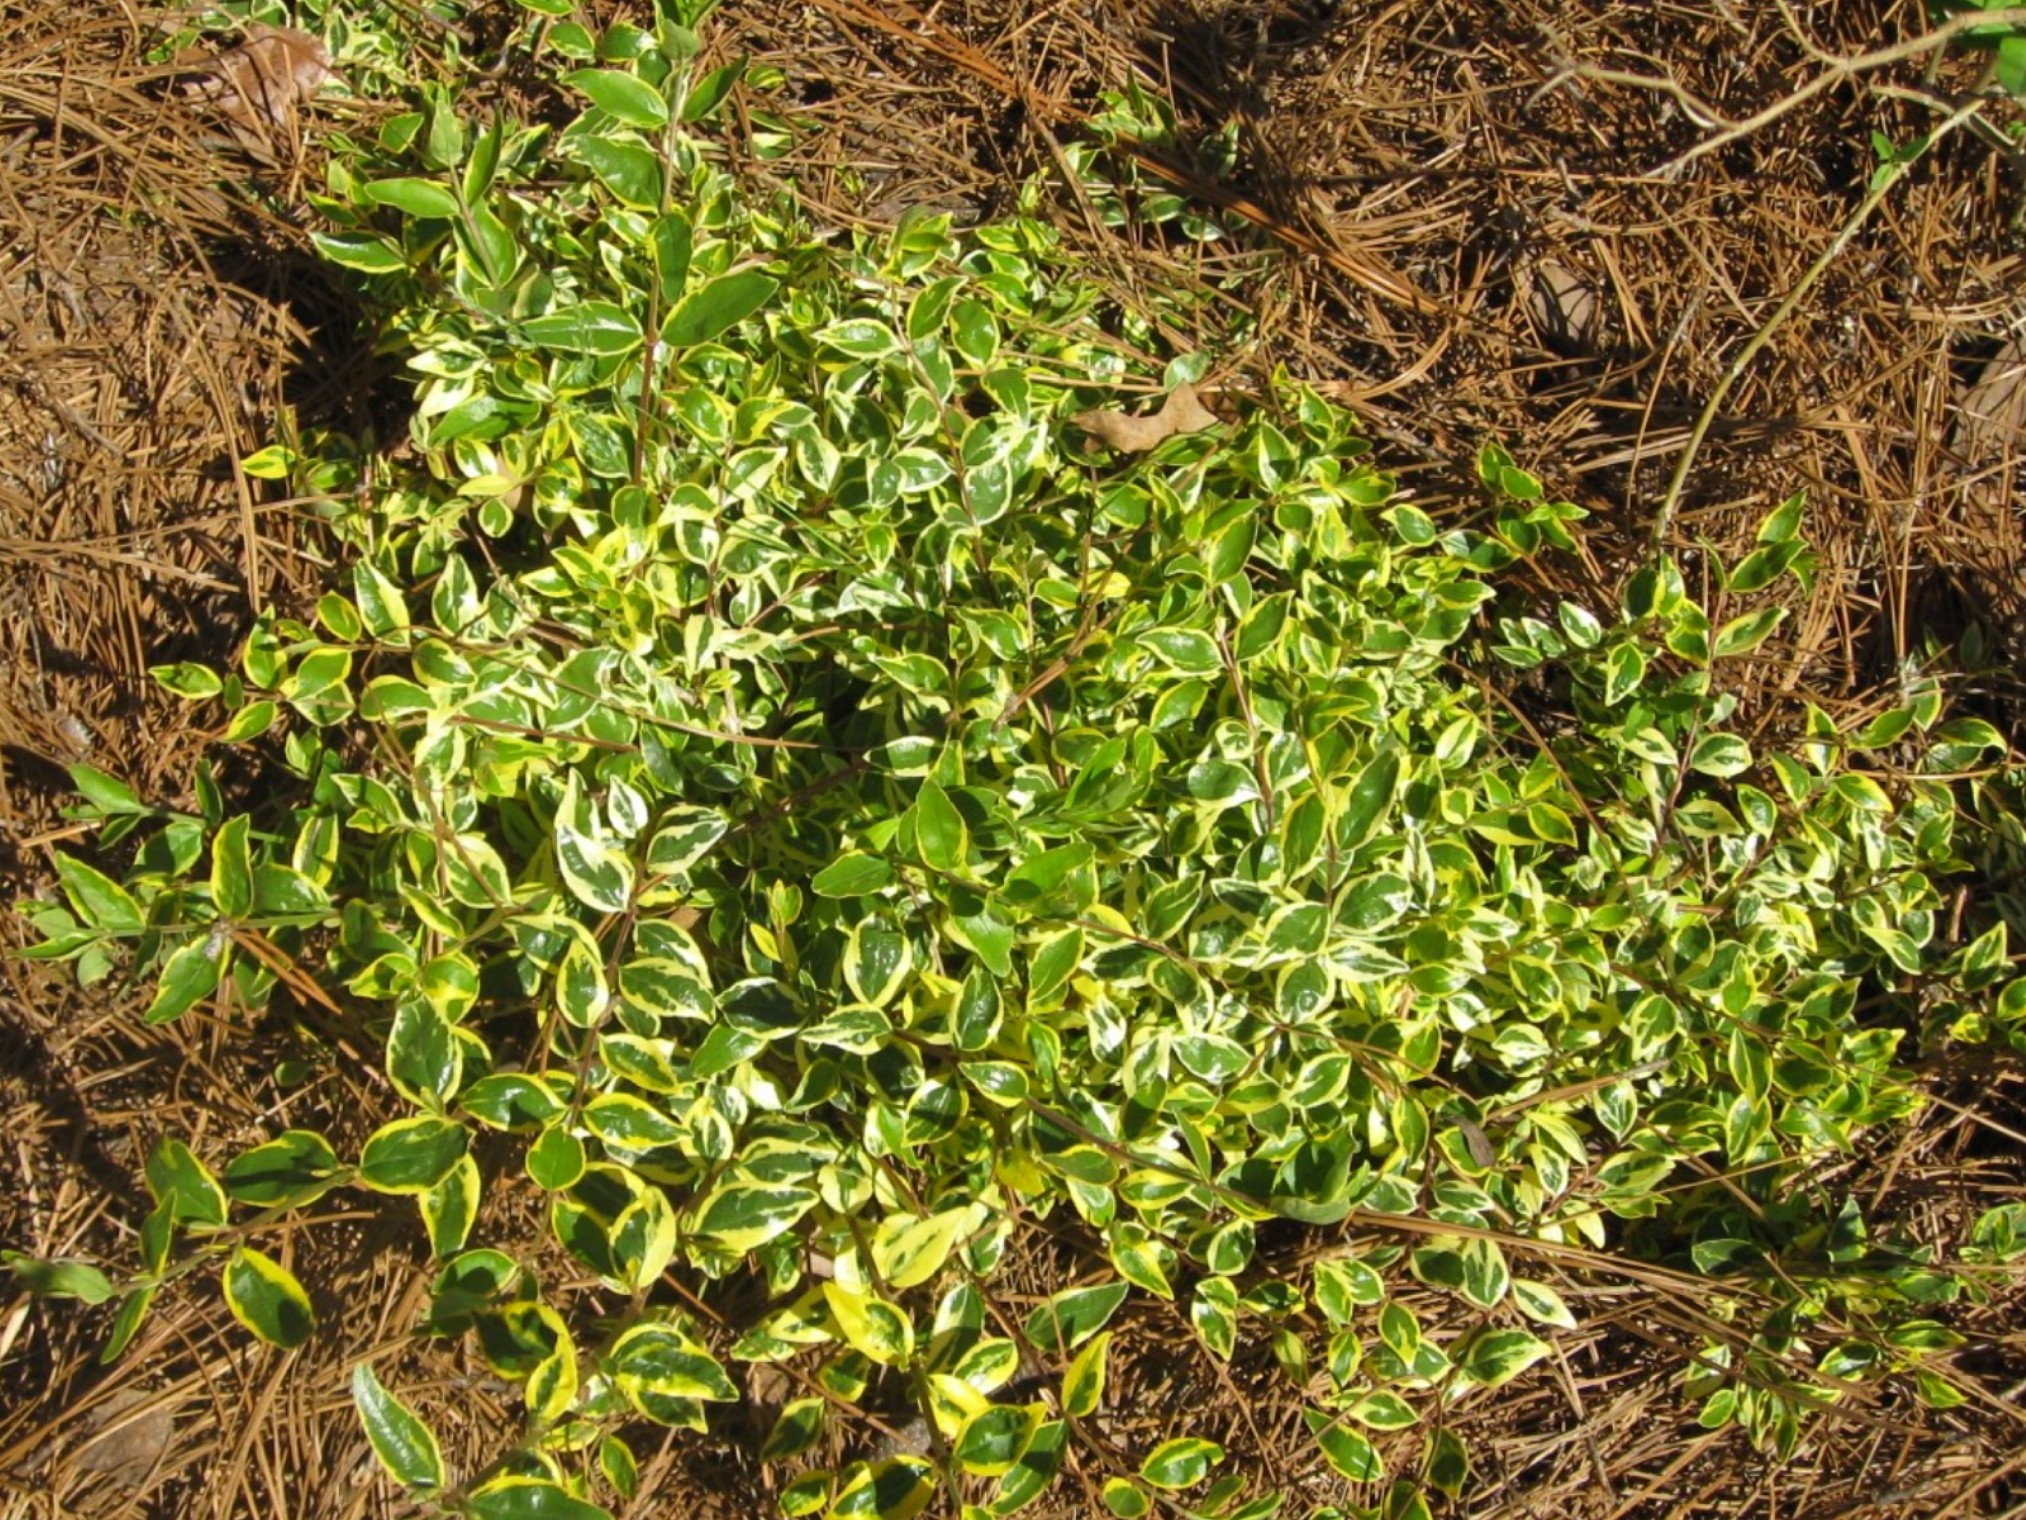 Abelia x grandiflora 'Hopleys' / Hopleys Abelia